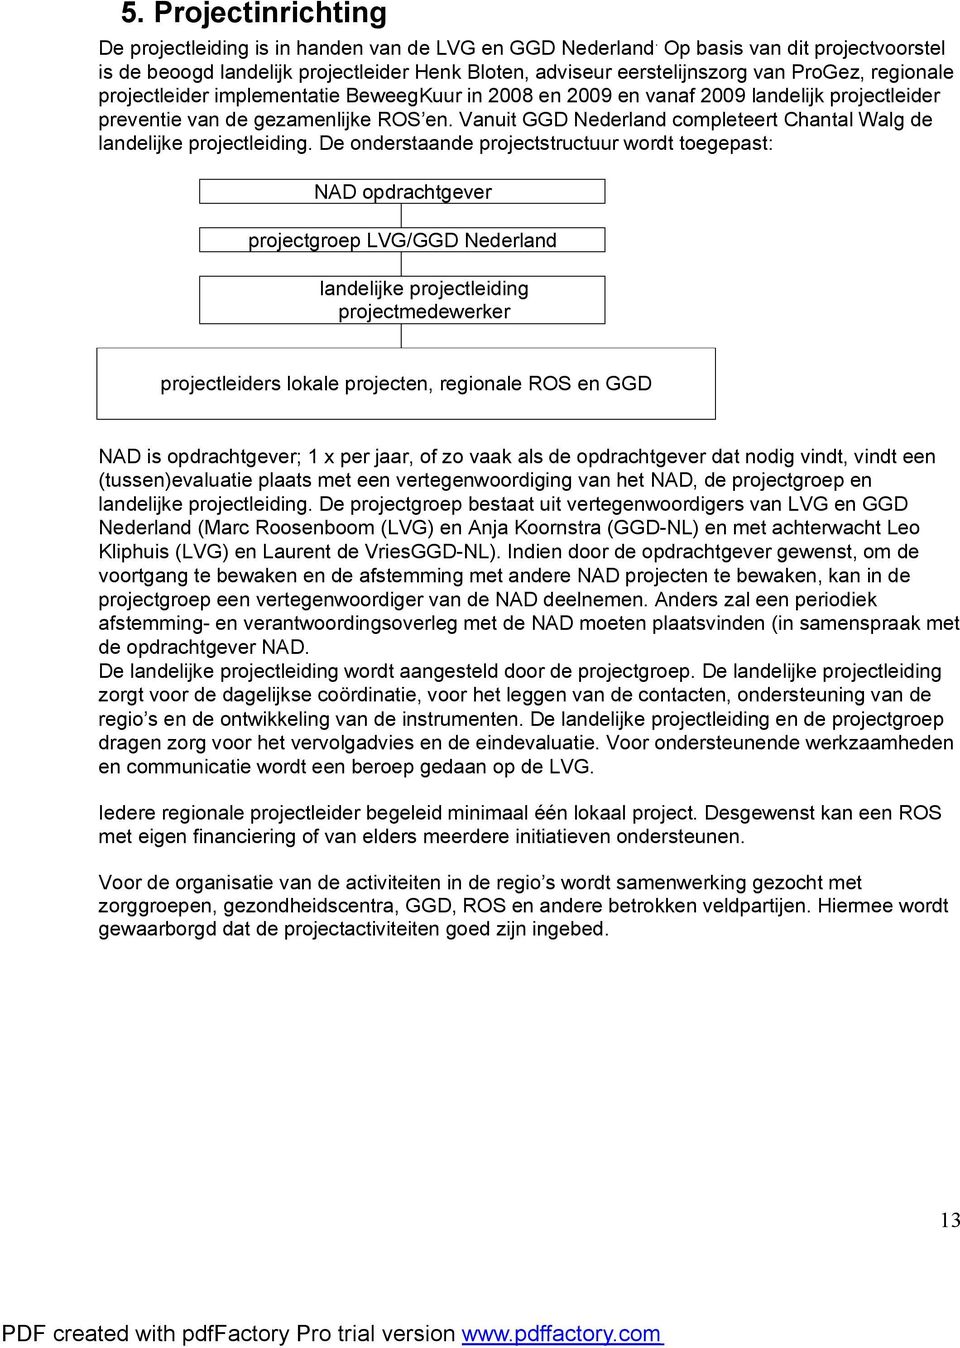 landelijk projectleider preventie van de gezamenlijke ROS en. Vanuit GGD Nederland completeert Chantal Walg de landelijke projectleiding.